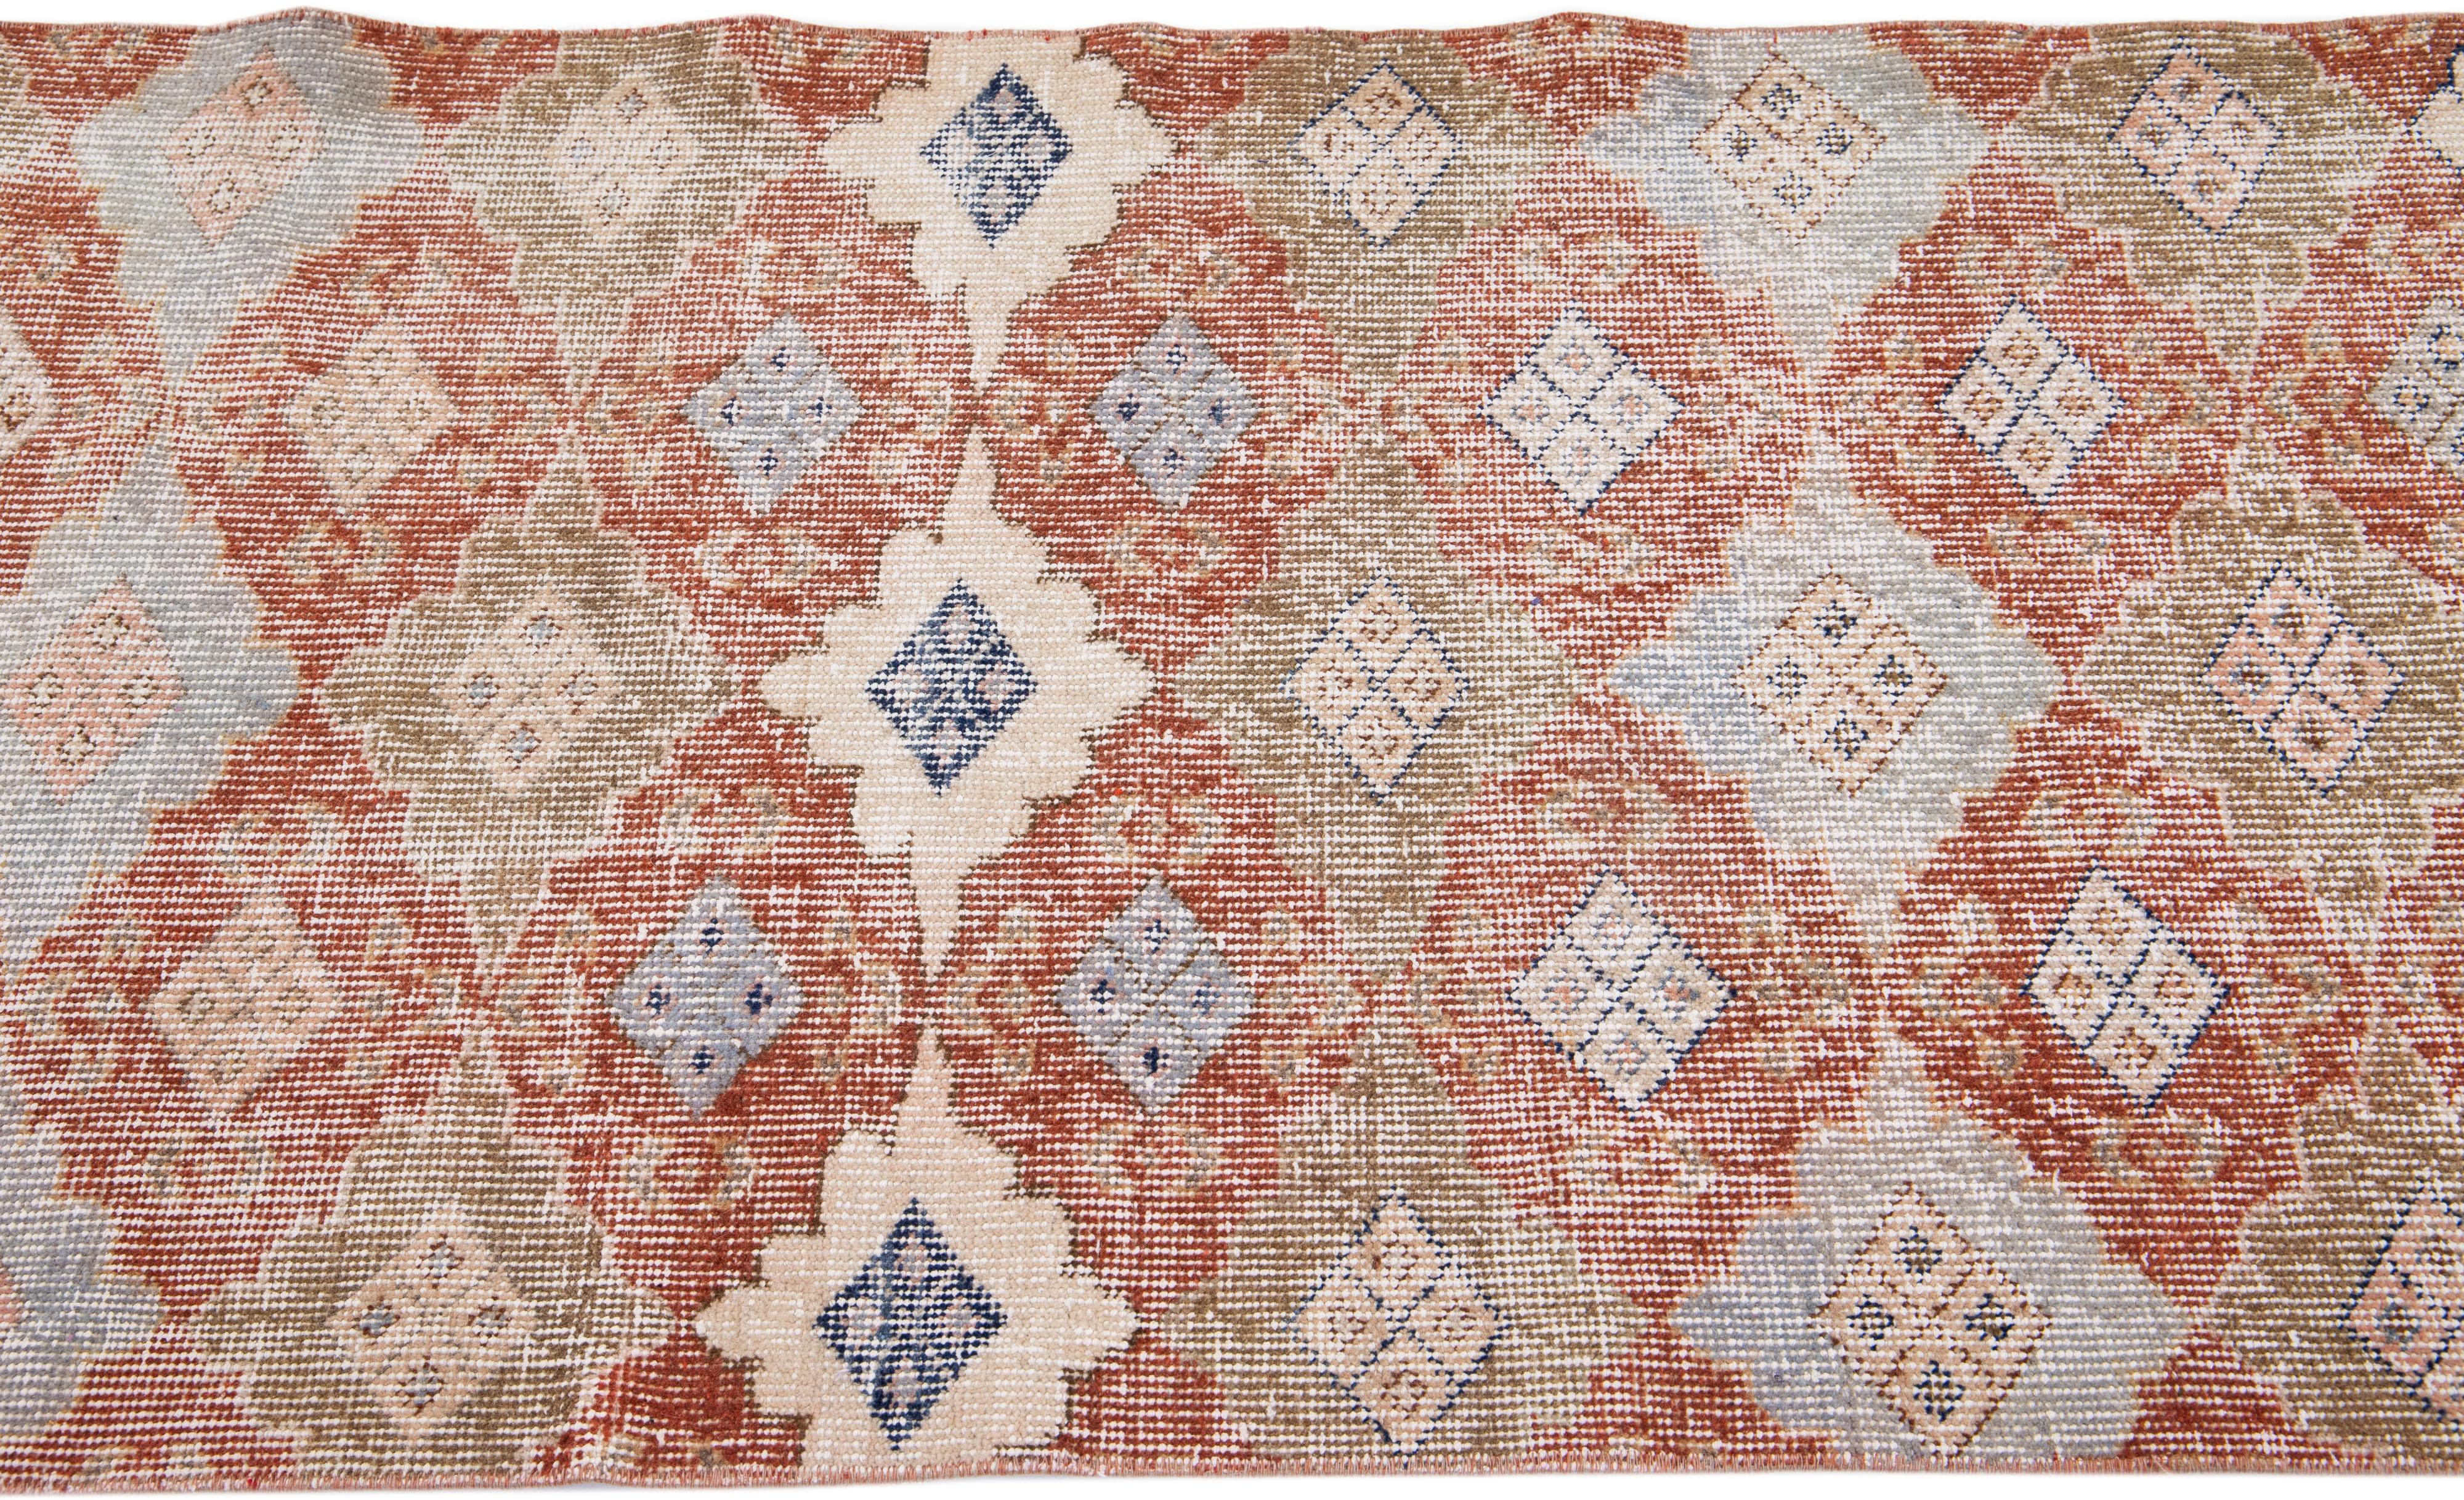 Tribal Floral Hanmdade Vintage Turkish Scatter Wool Rug In Rust For Sale